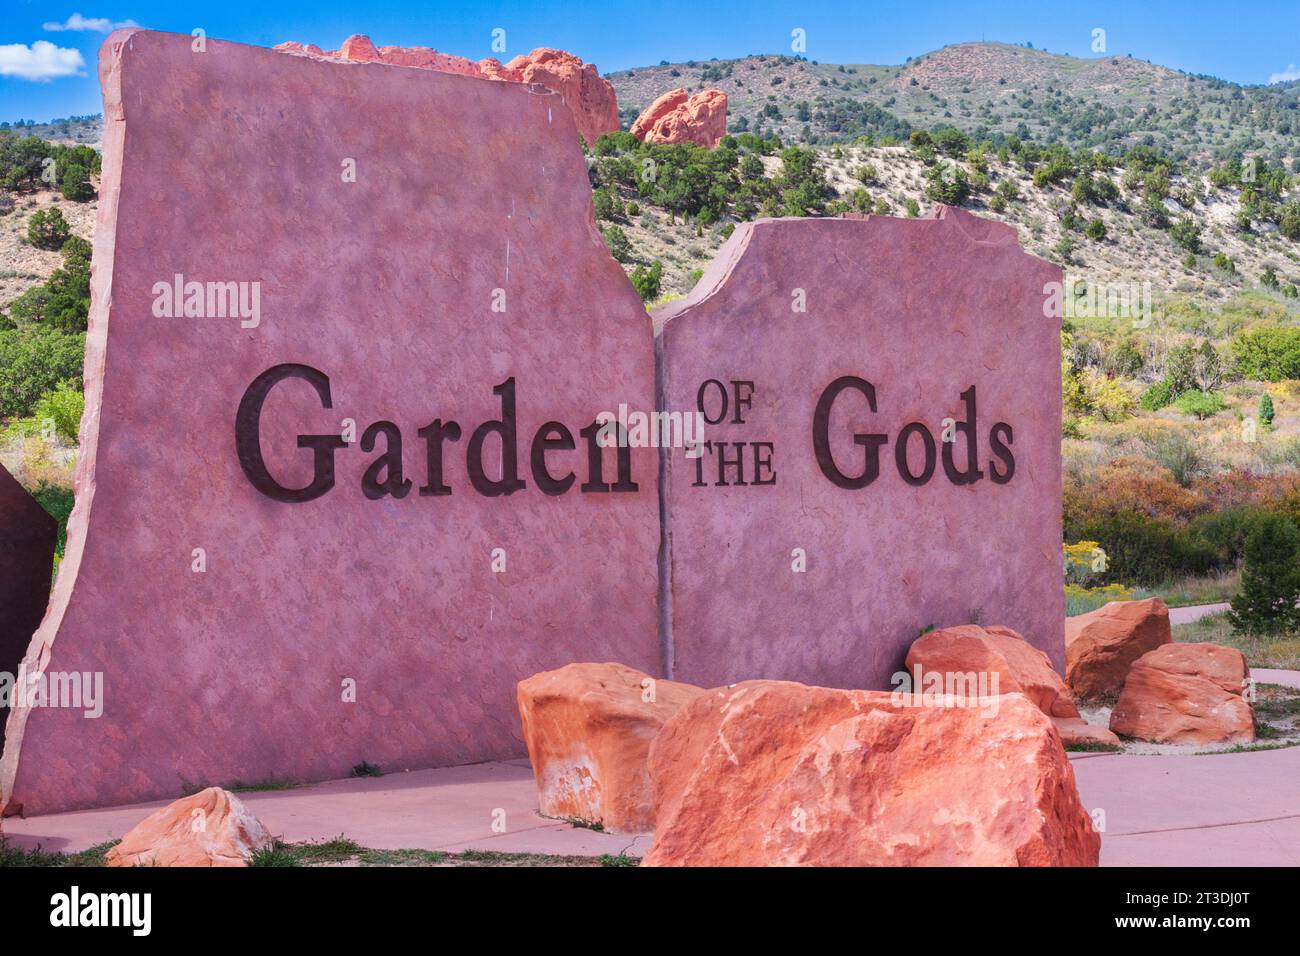 Parco pubblico gratuito Garden of the Gods a Colorado Springs, Colorado. Questo parco ha caratteristiche geologiche e formazioni straordinarie. Foto Stock